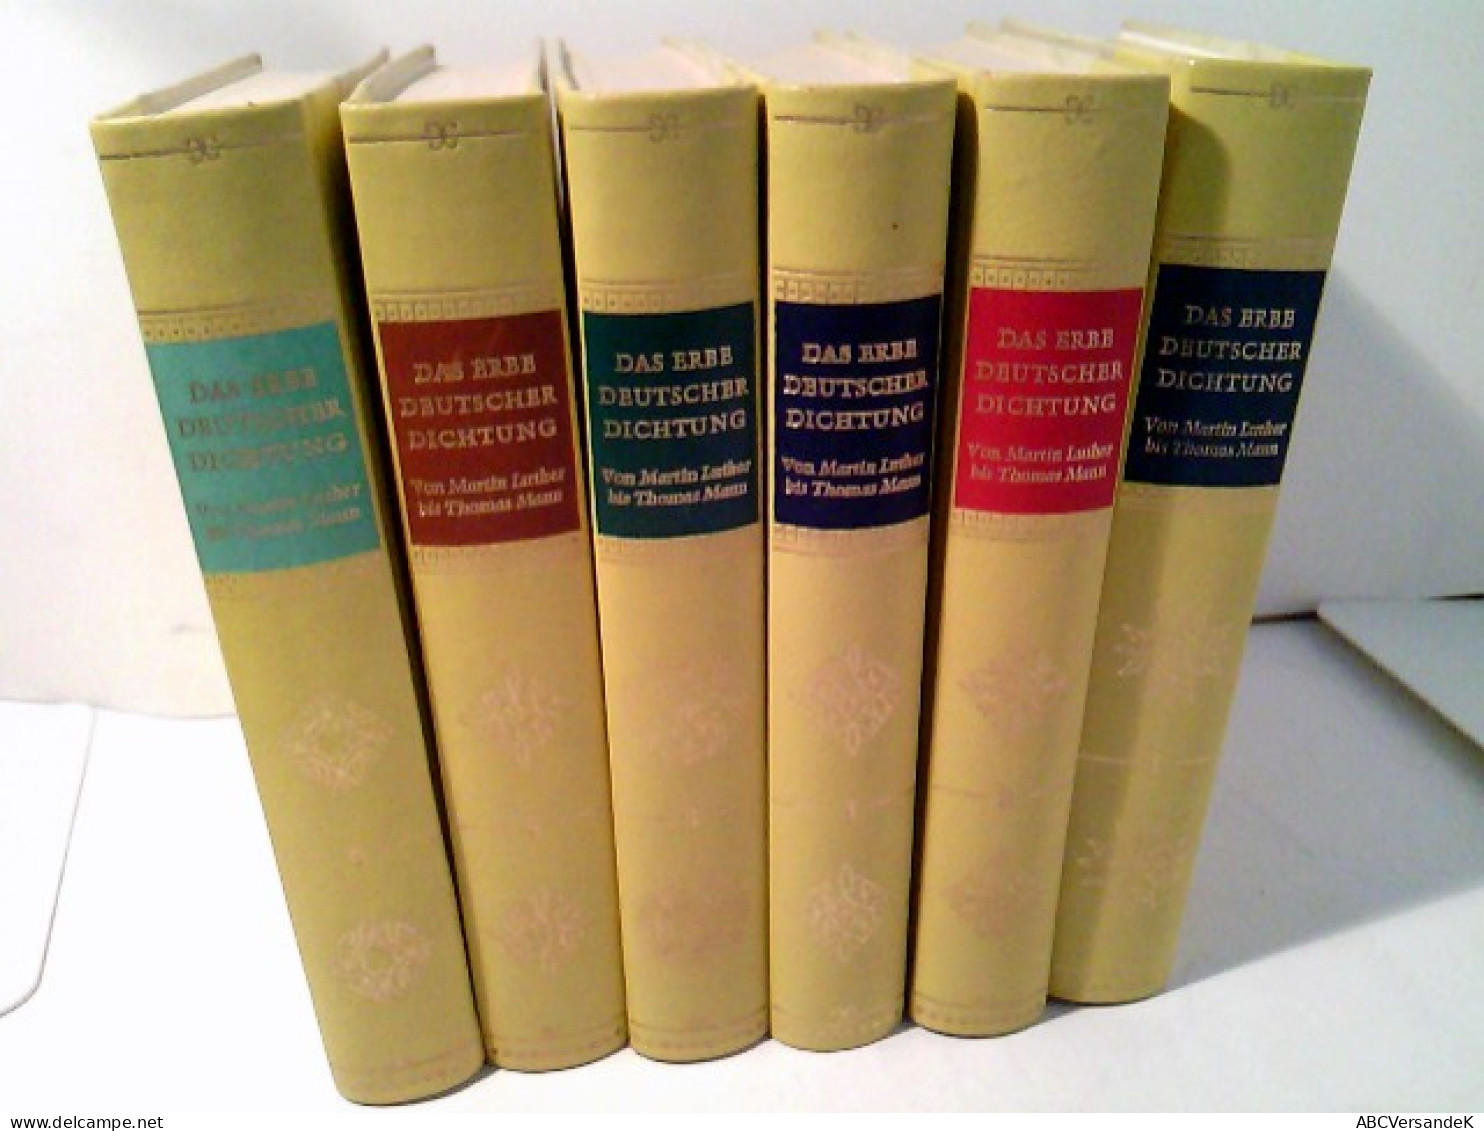 Konvolut: 6 Bände (von6) Das Erbe Deutscher Dichtung. Von Martin Luther Bis Thomas Mann - Komplett. (Hardcover - German Authors